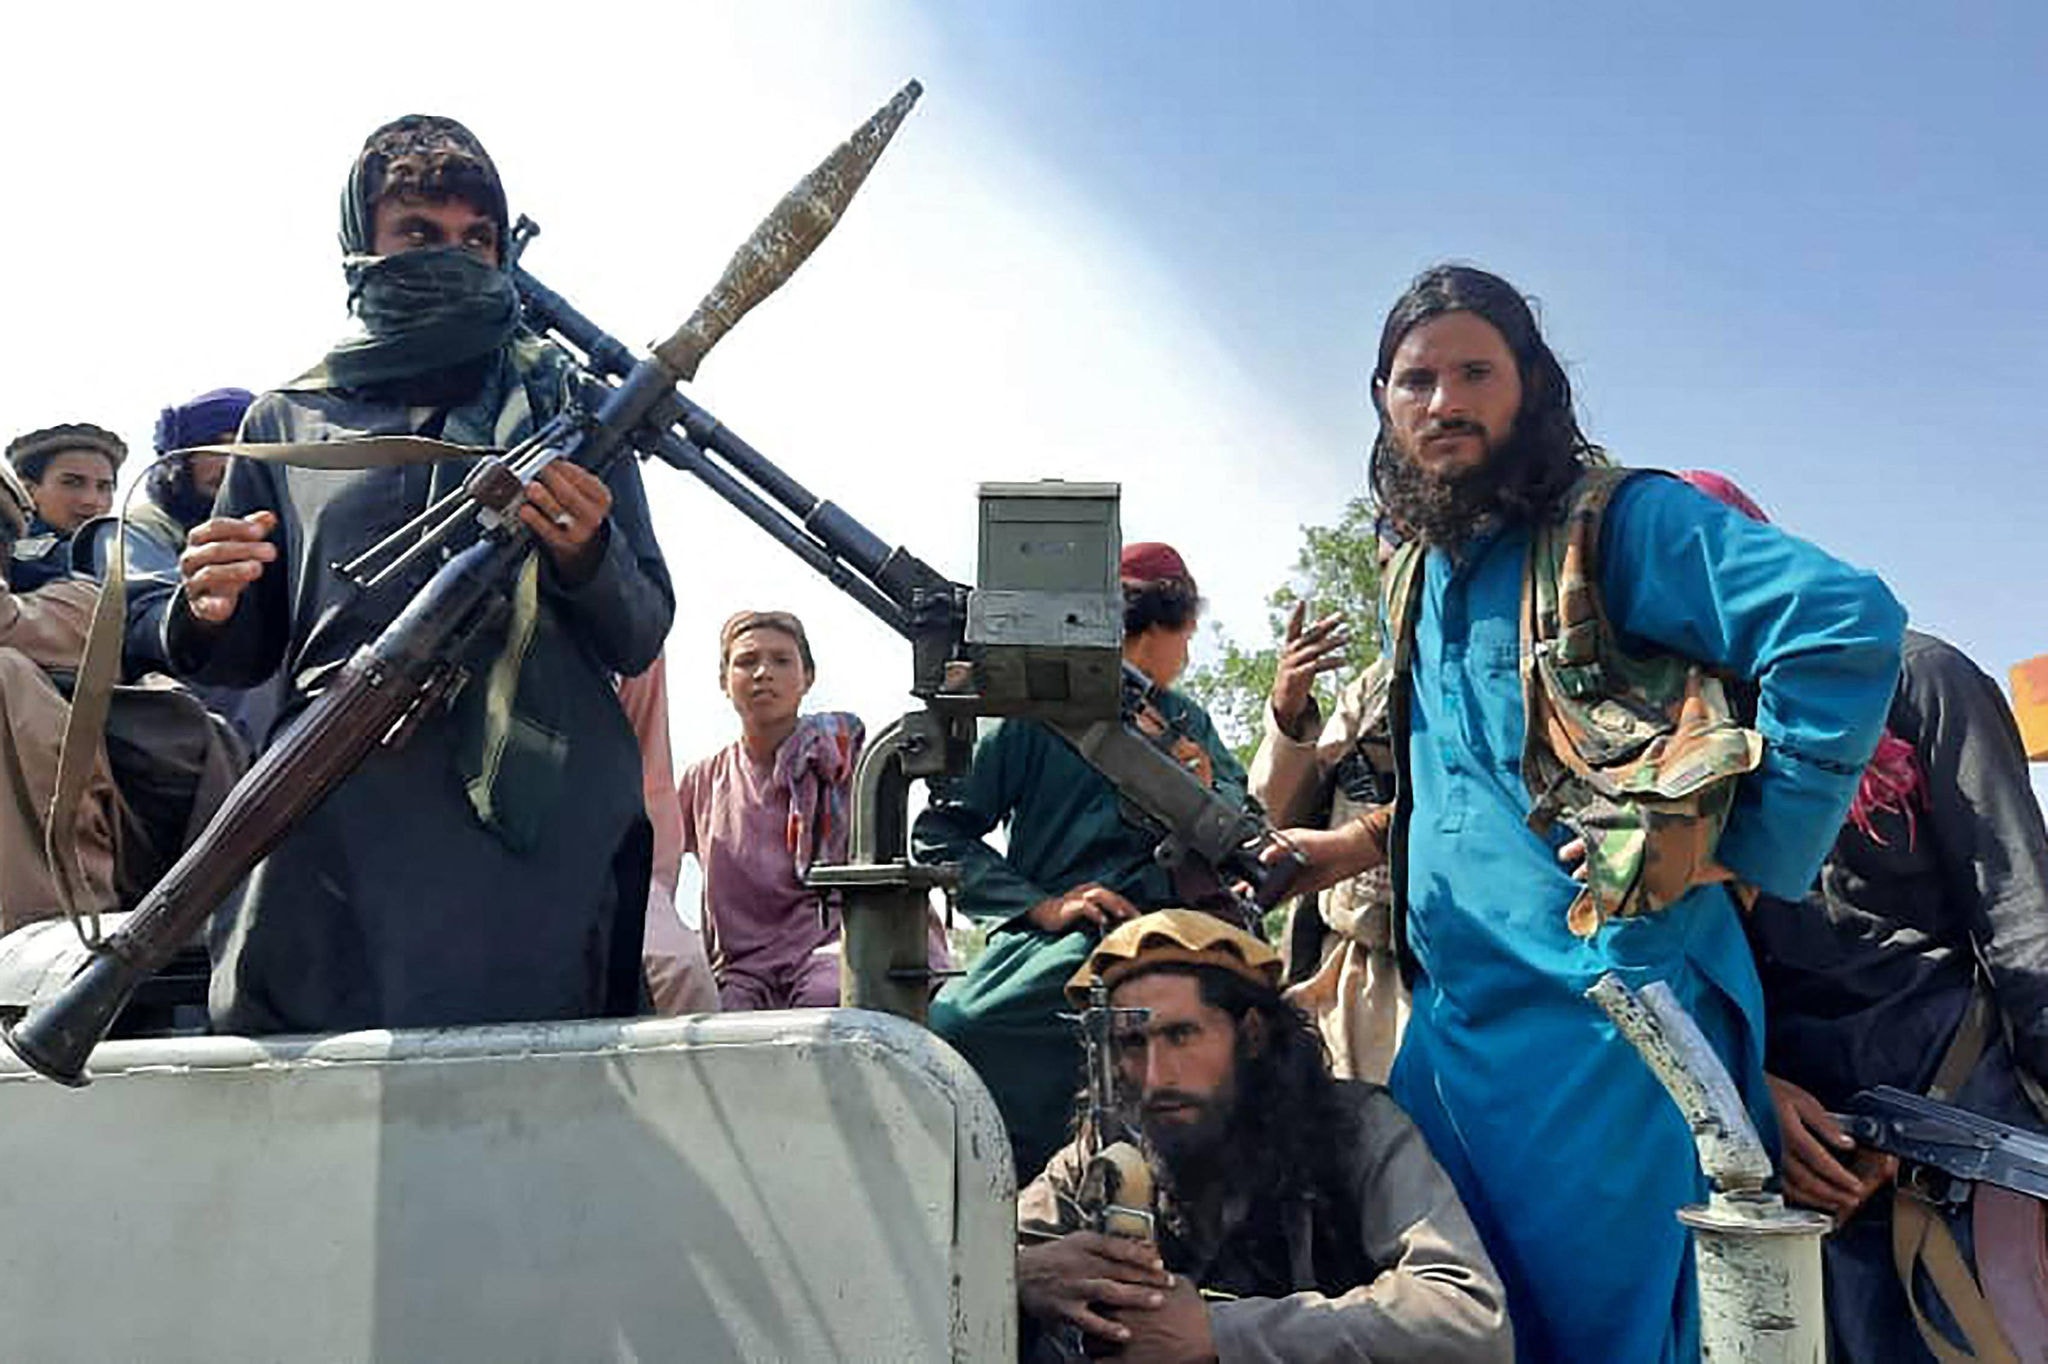 Talibã toma a capital Cabul e volta ao poder no Afeganistão após 20 anos